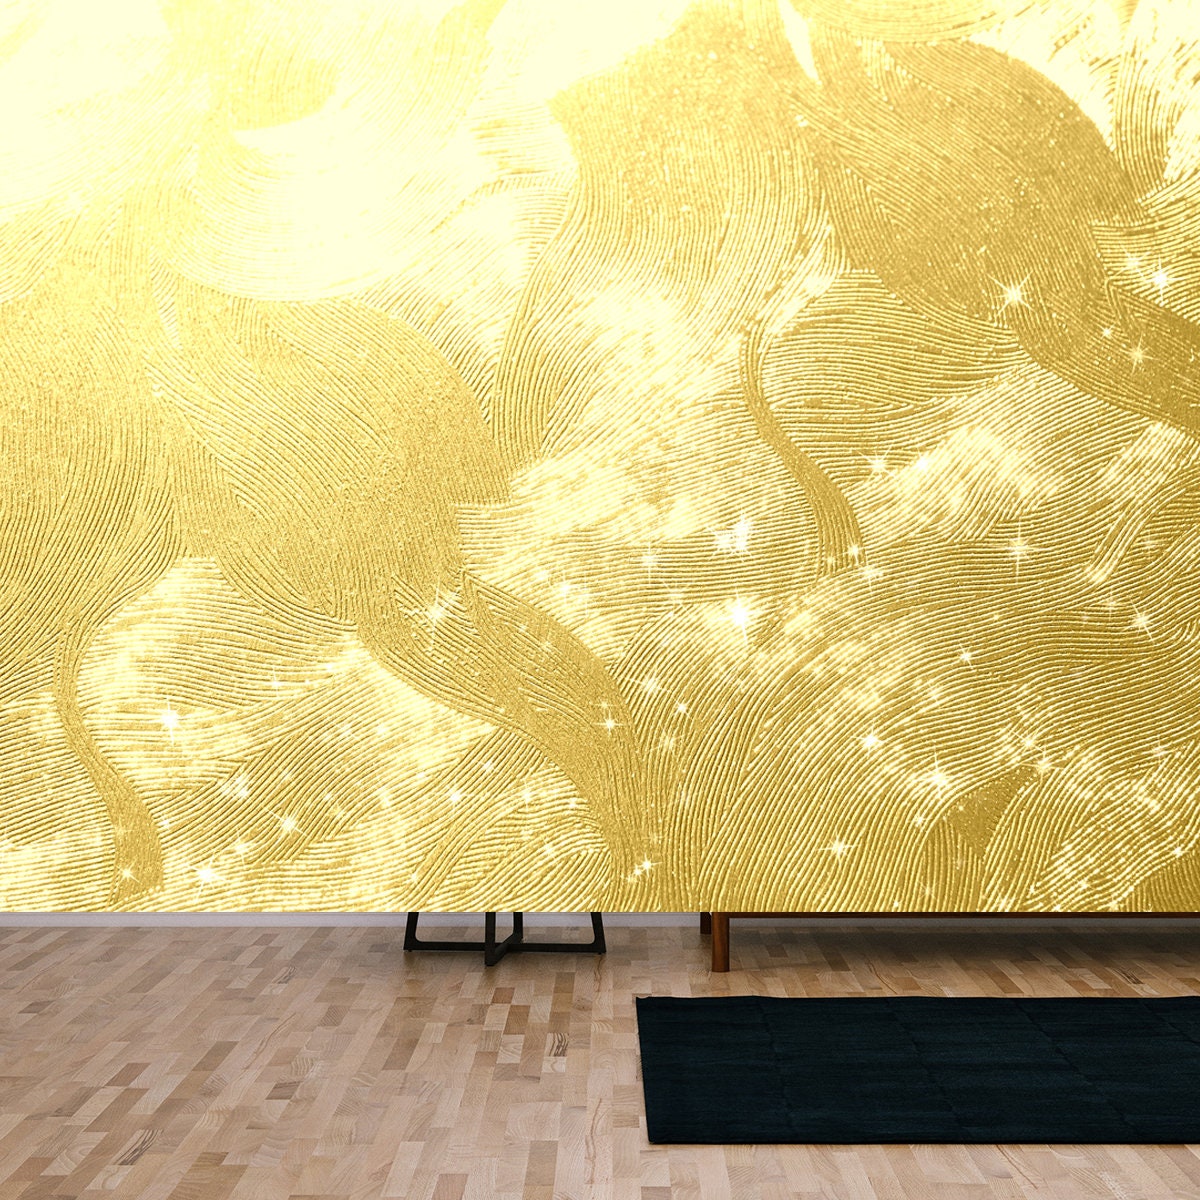 Golden Japanese Paper and Light Background Wallpaper Living Room Mural